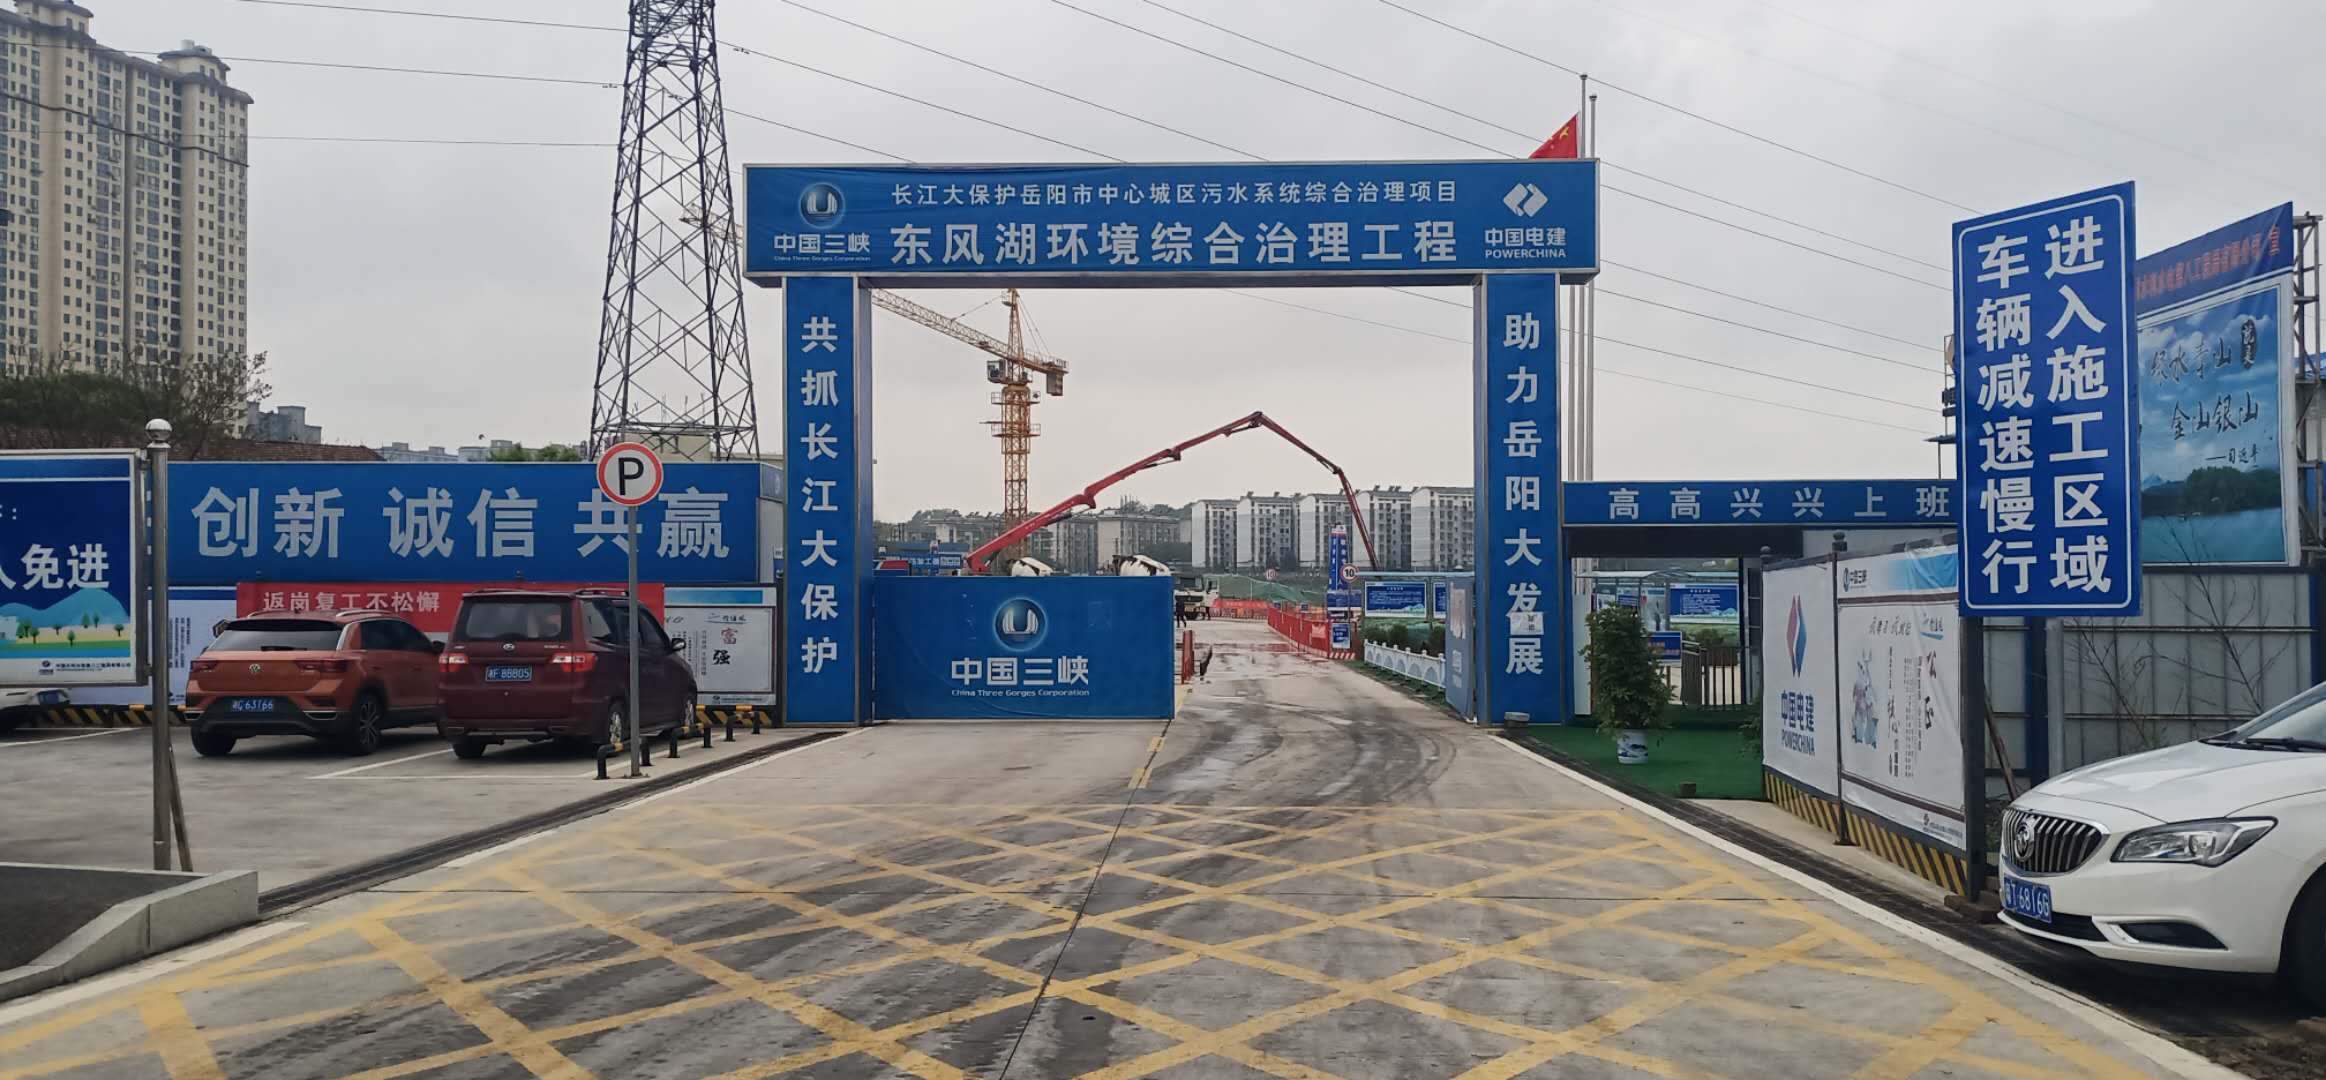 岳阳市中心城区污水系统综合管理项目东风湖环境综合治理工程